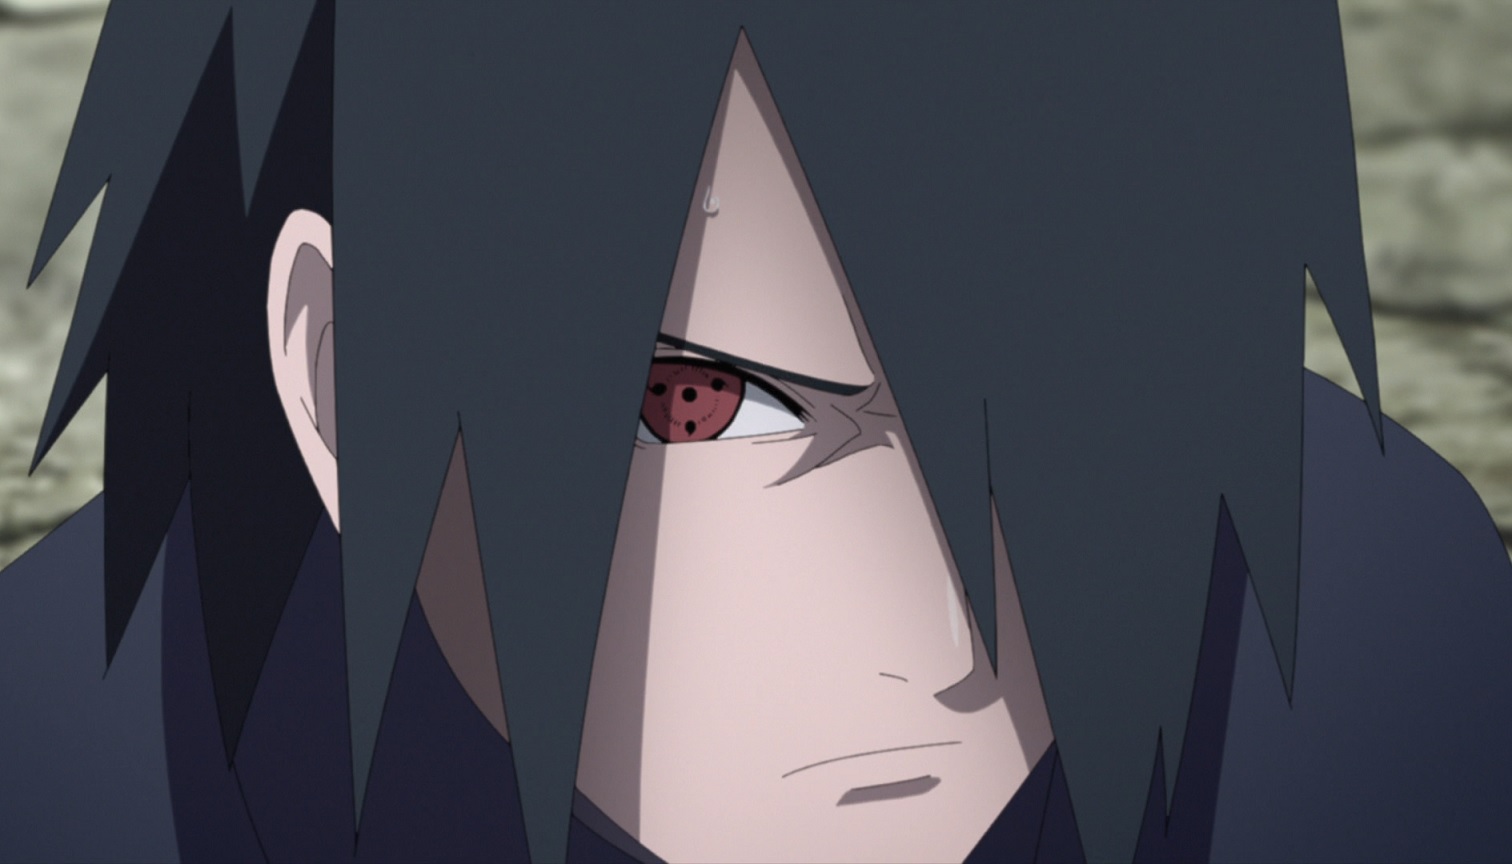 Sasuke adulto conseguiria vencer Madara sozinho em Naruto?